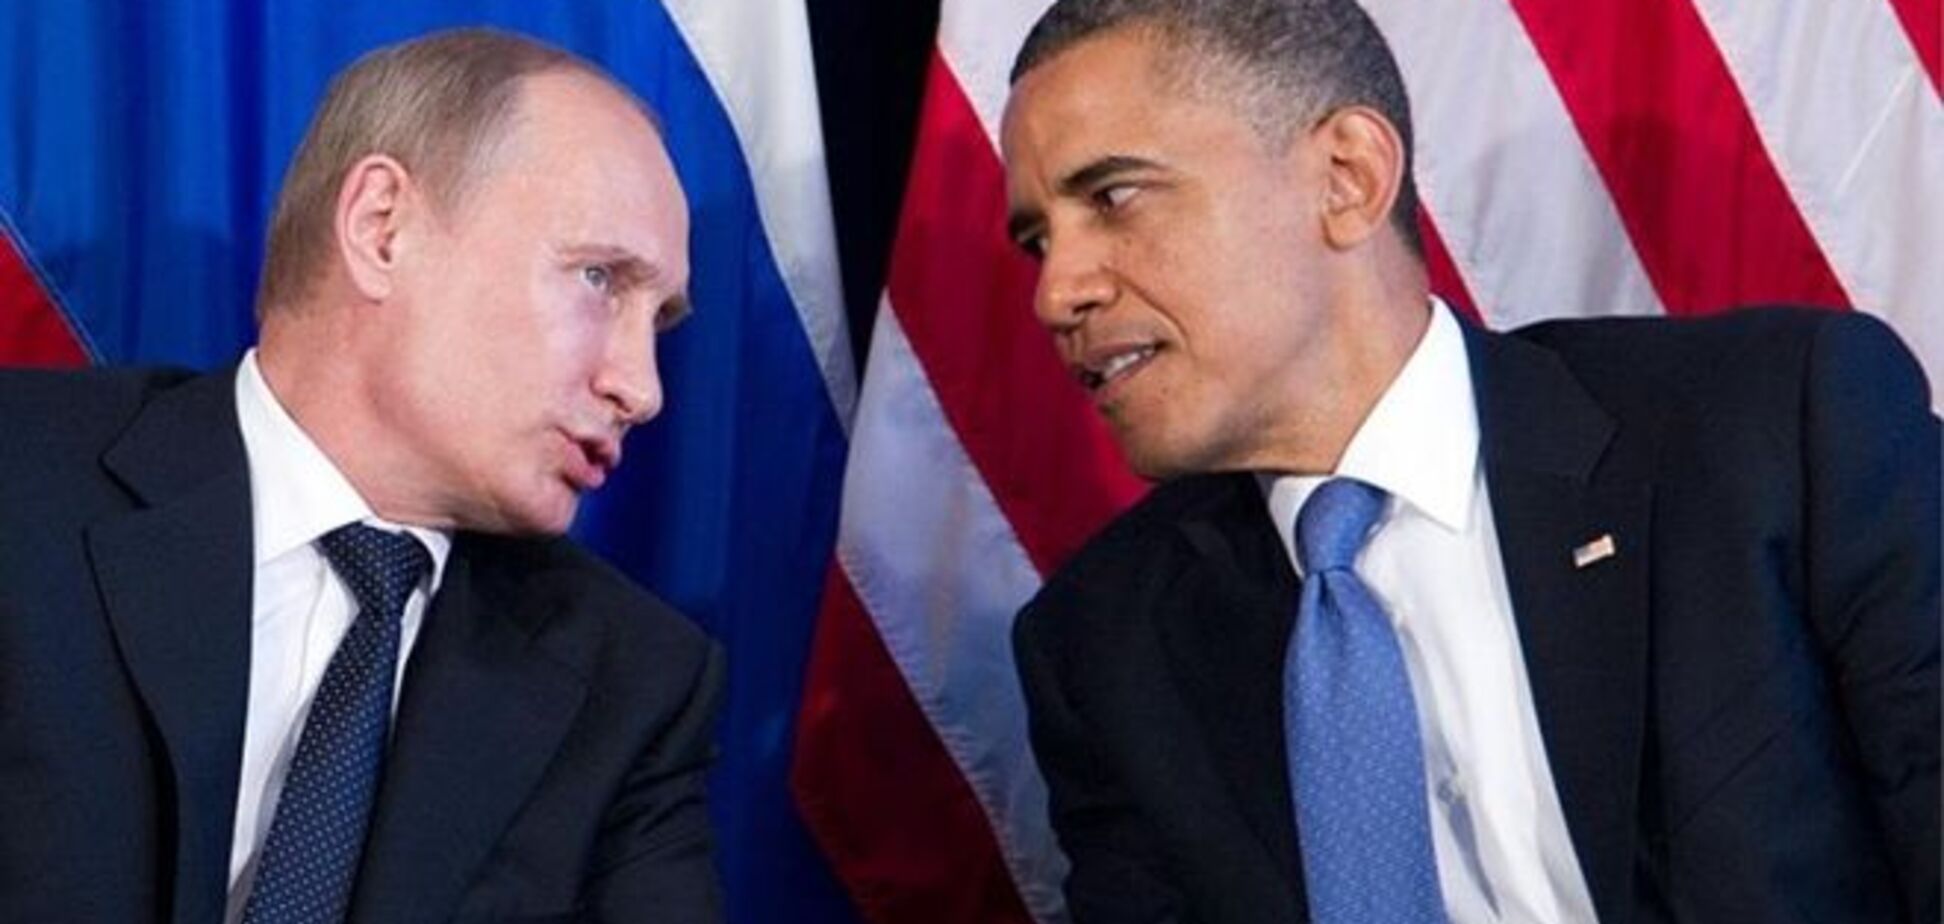 Отдельной встречи Путина и Обамы на саммите G20 не планируется